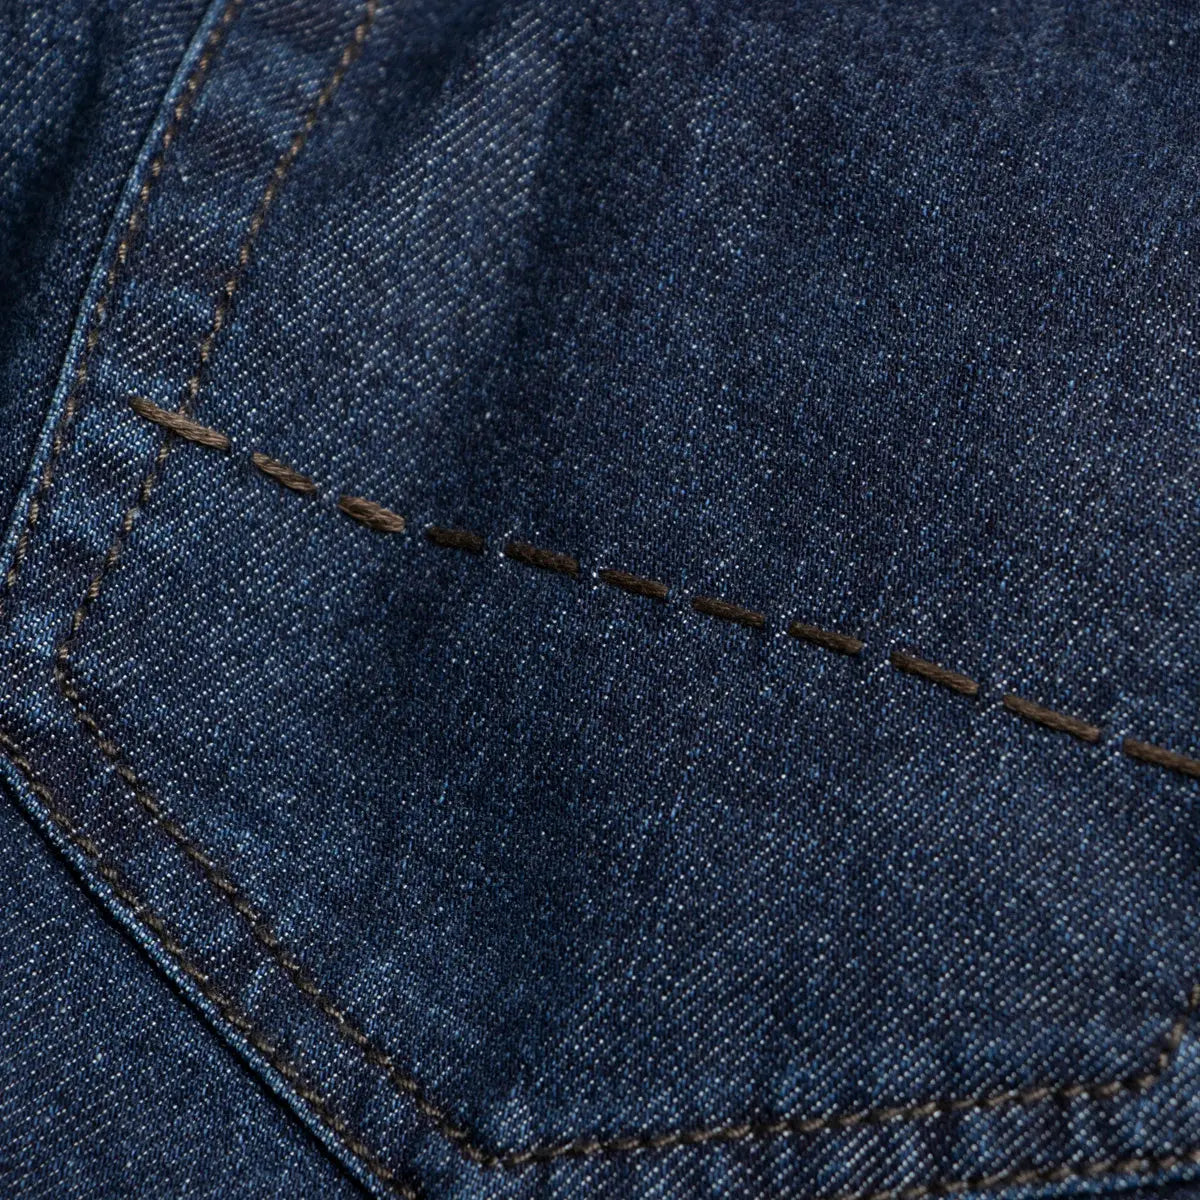 Dark Denim 'Milano' Regular FIt Cotton & Silk Jeans  Richard J. Brown   